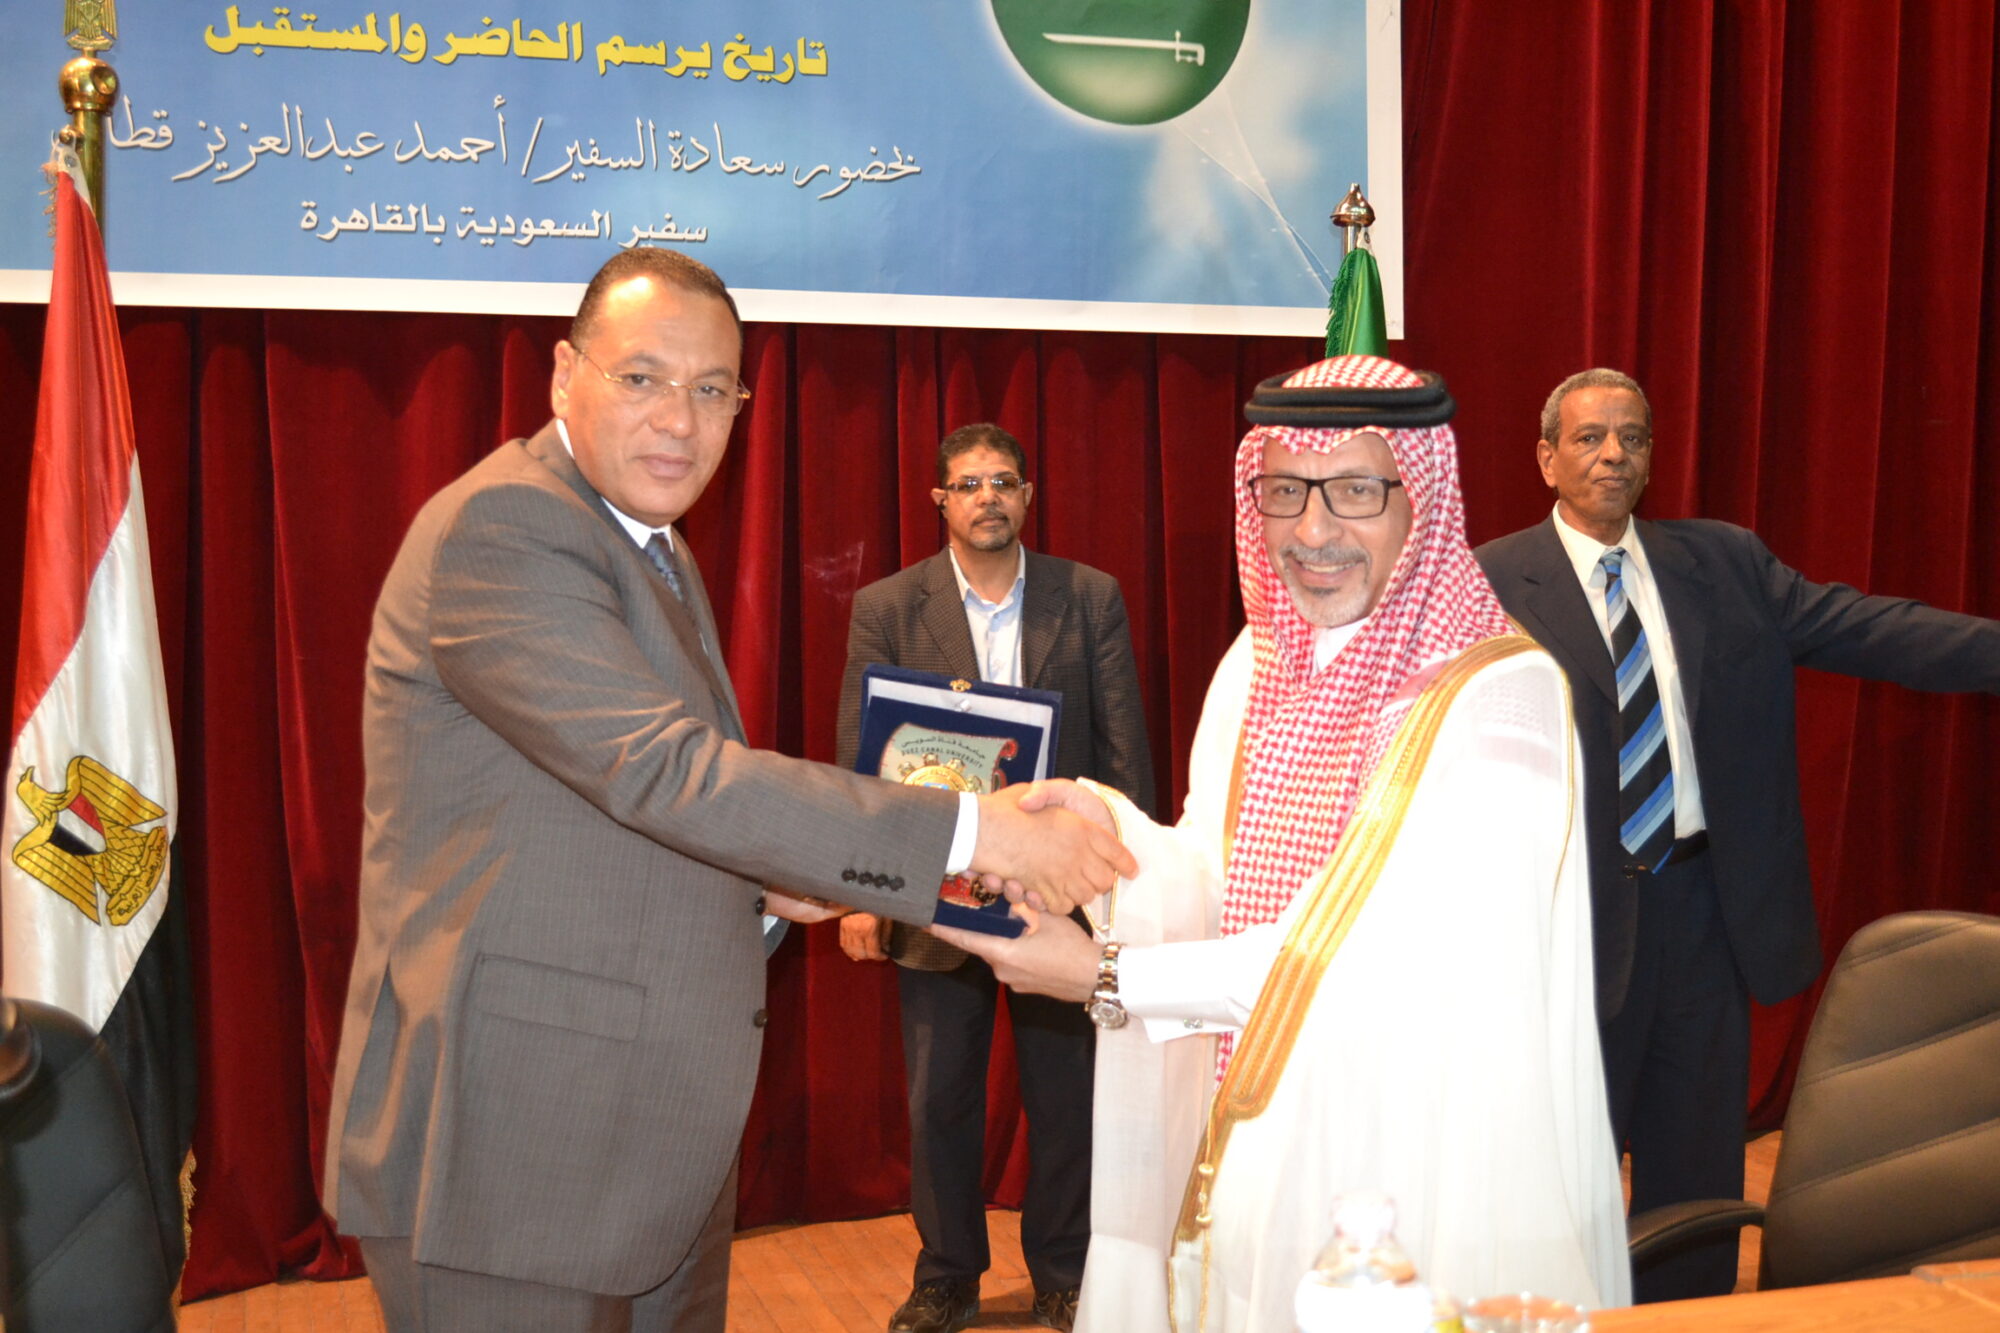 السفير السعودي خلال تكريم بالقاهرة watan.com